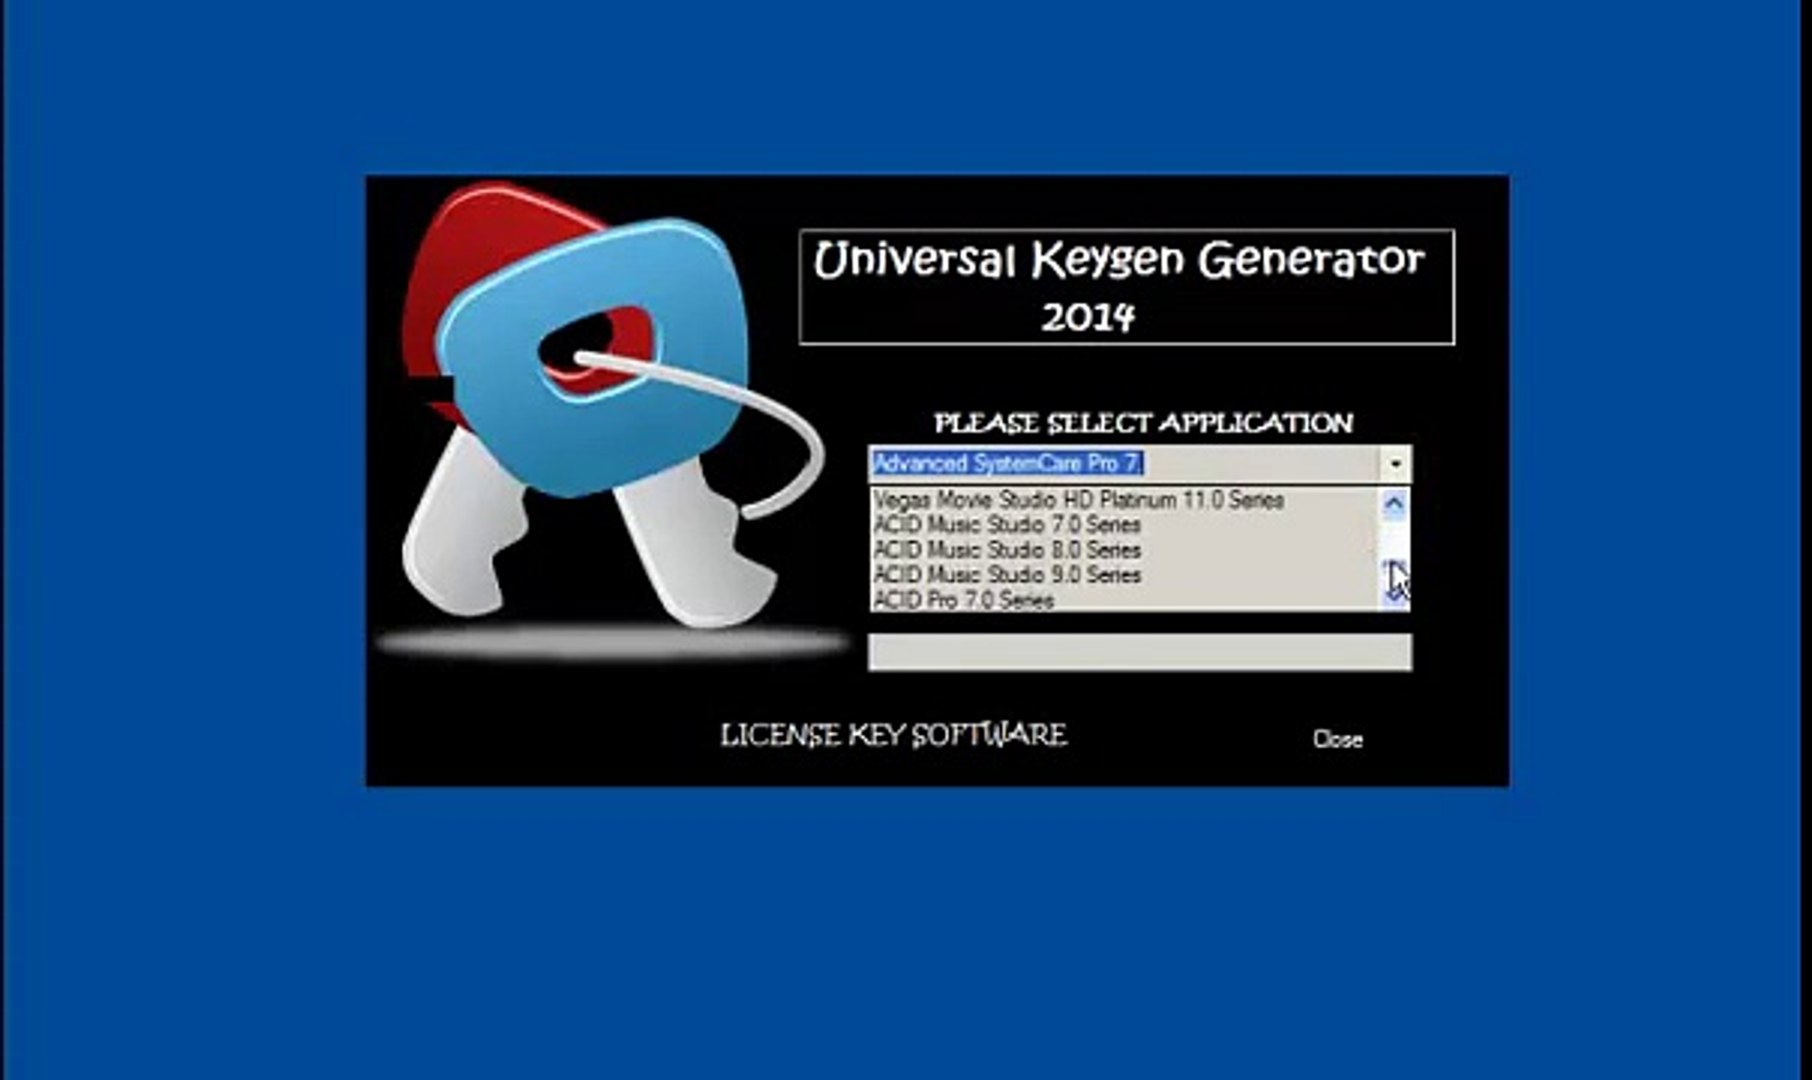 ironcad keygen generator torrent